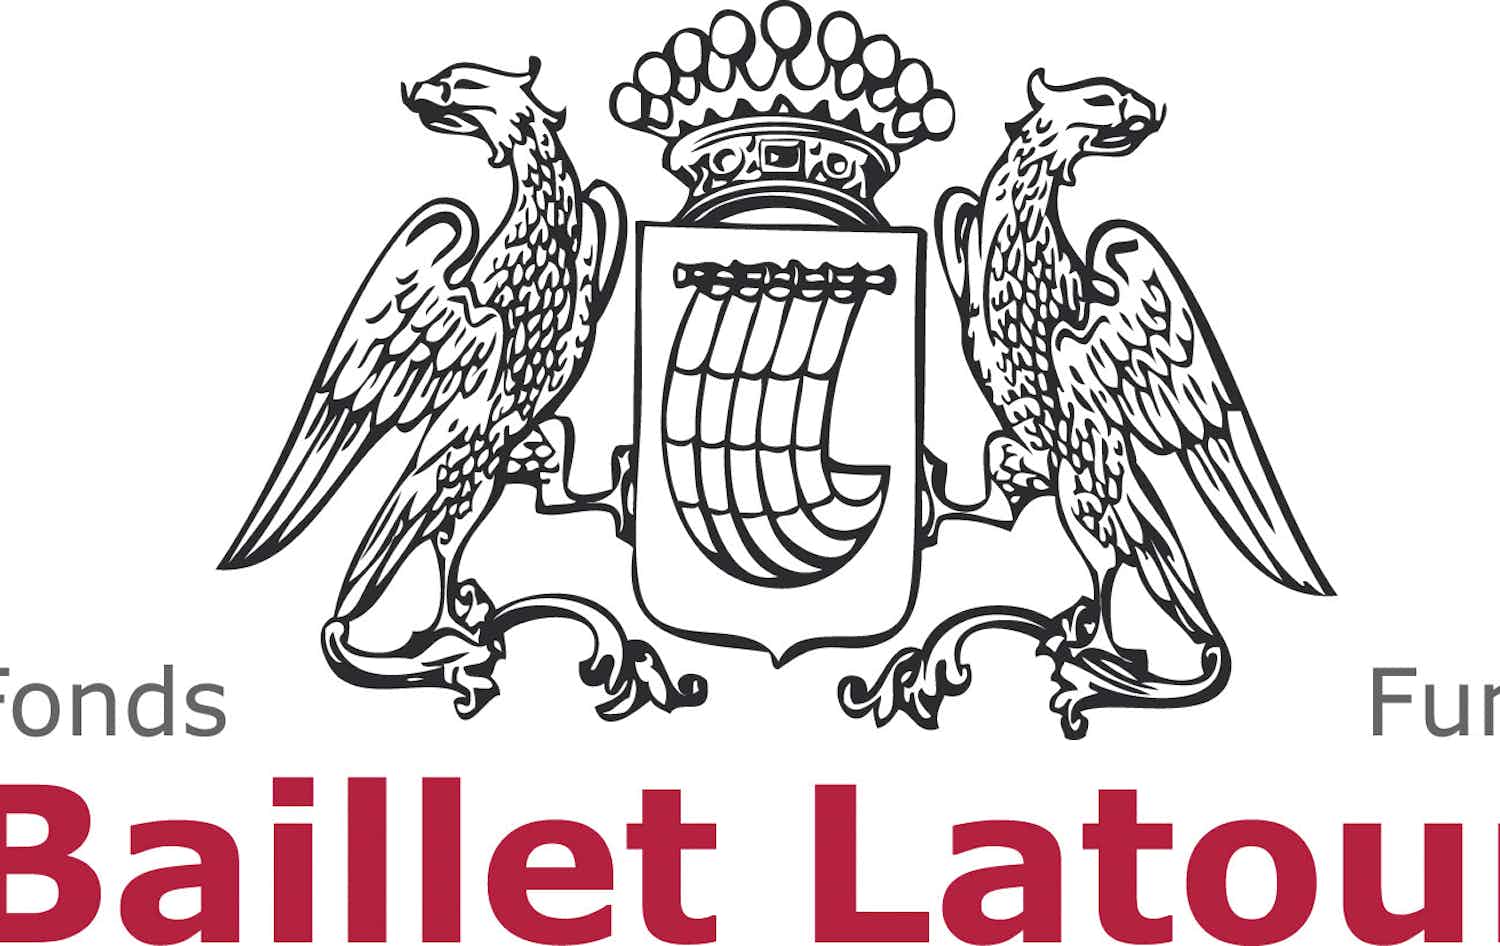 Baillet Latour